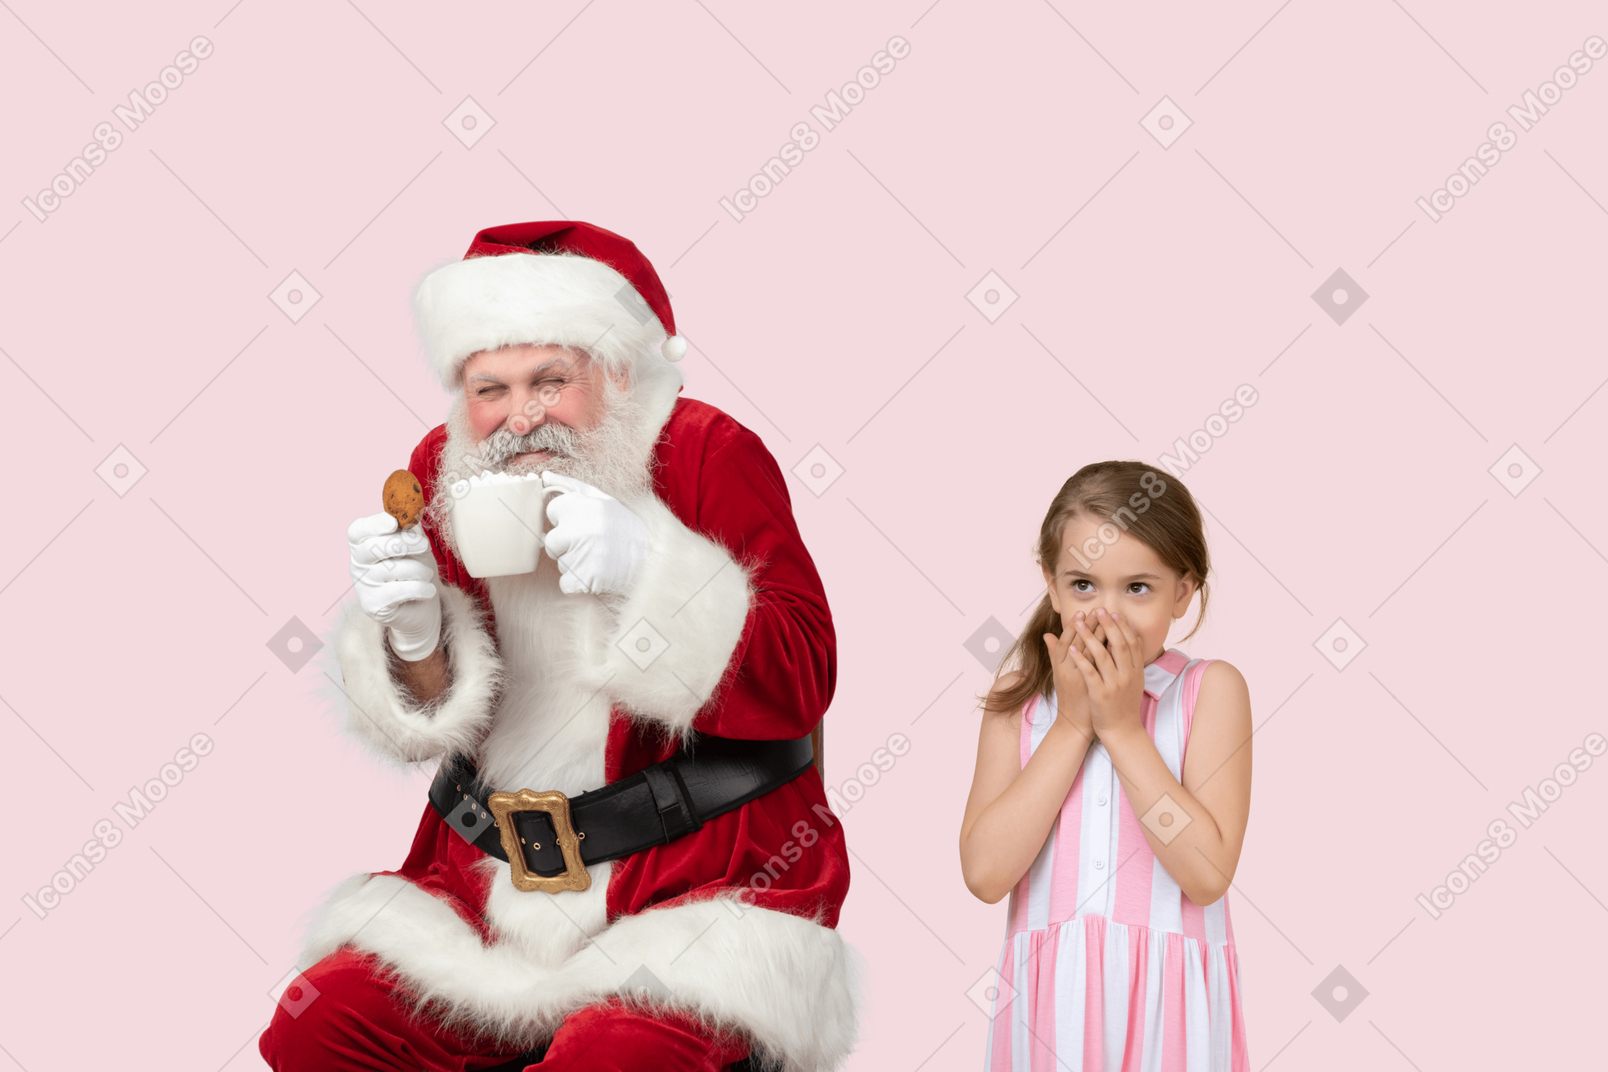 Der weihnachtsmann hat meinen kakao gestohlen!